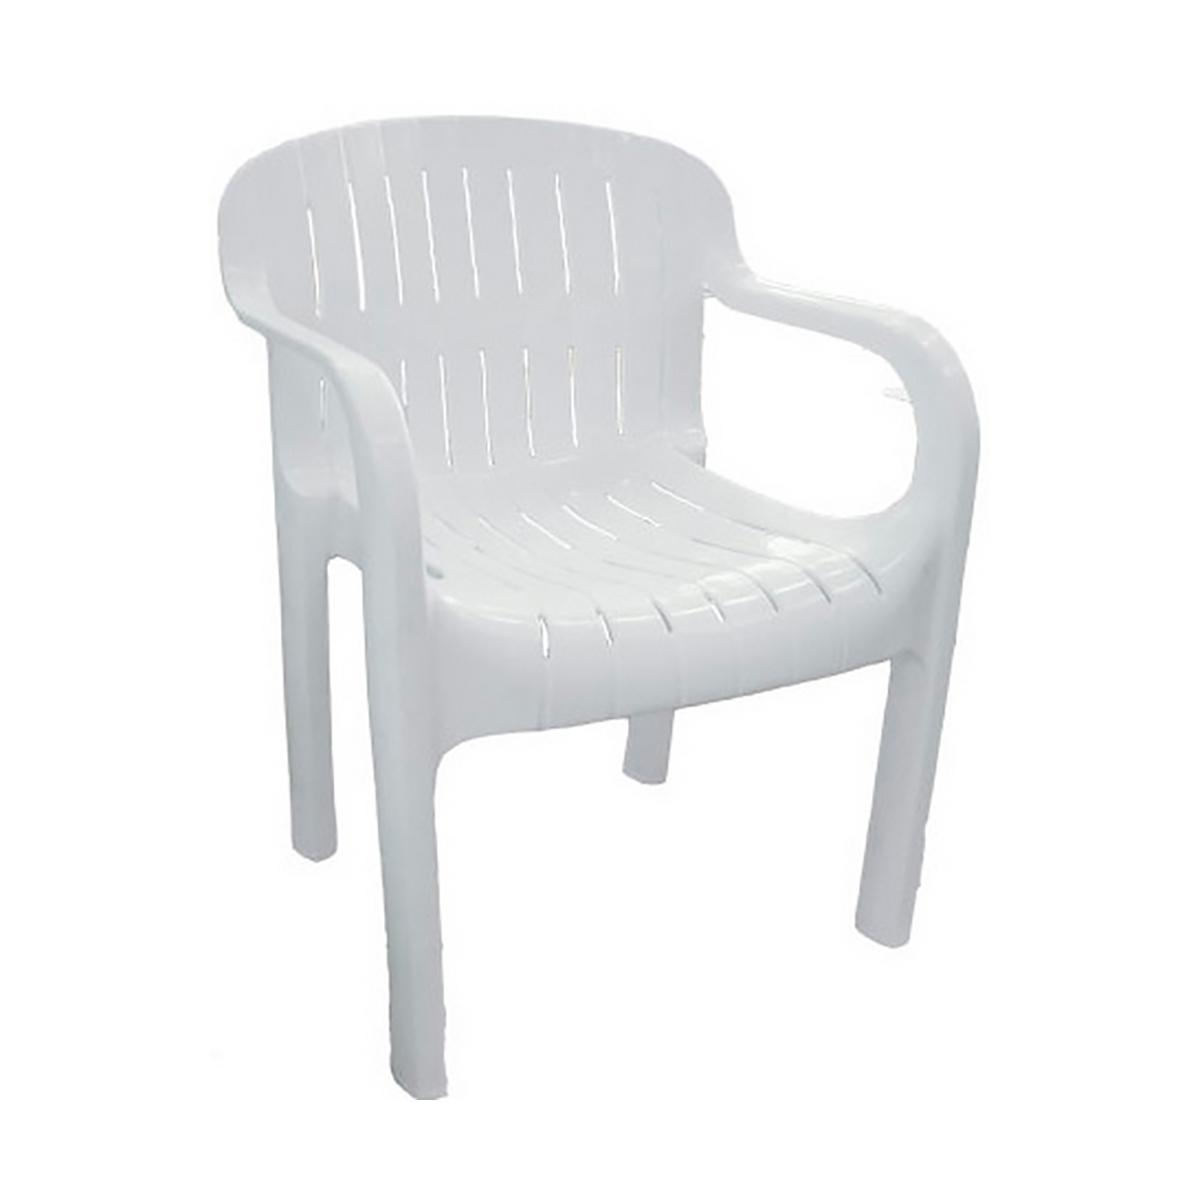 Кресло садовое белое 567x825x578 мм, пластик